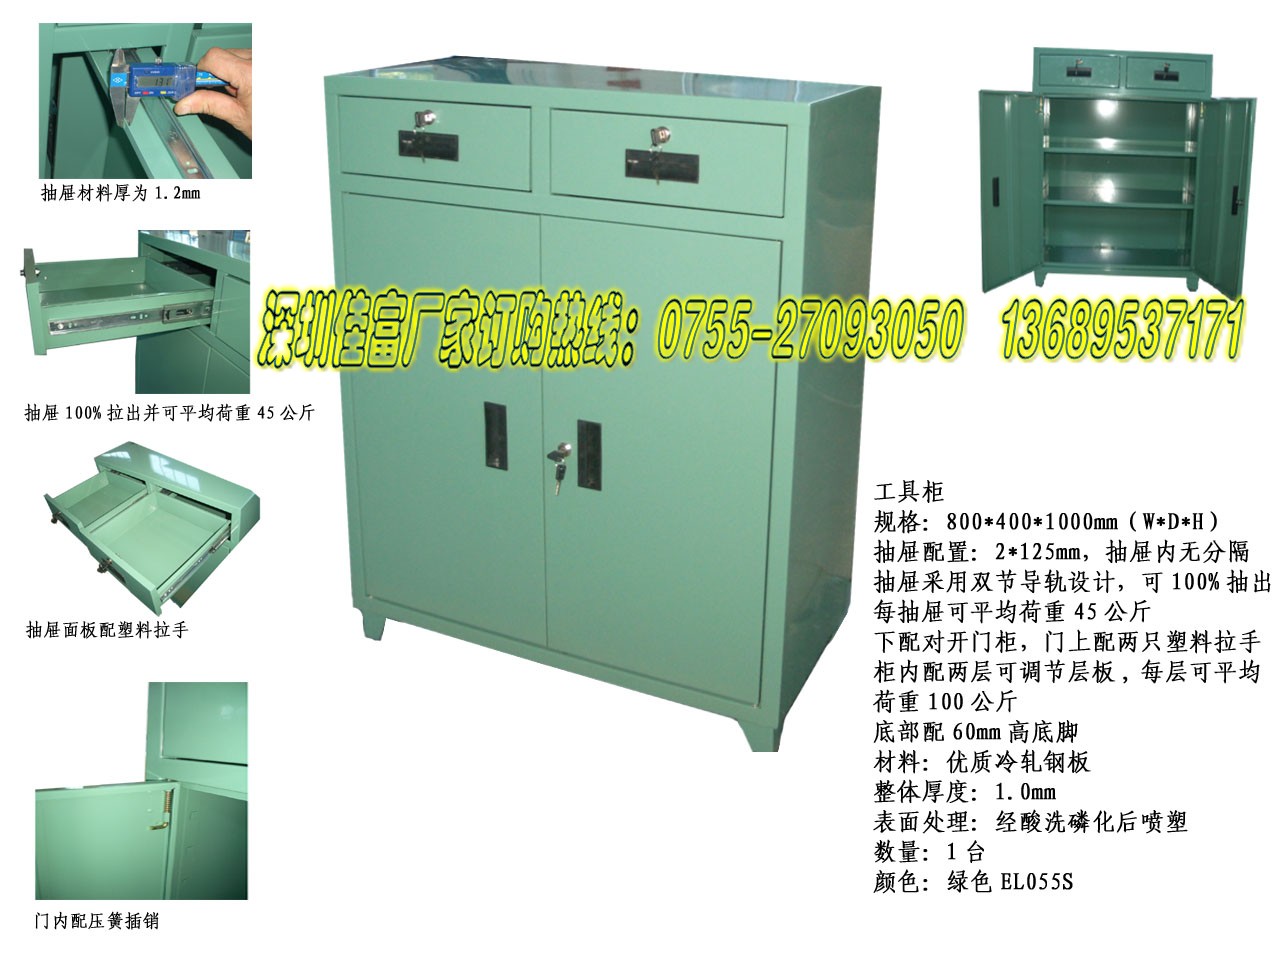 耐用的移动工具柜深圳佳富供应——优惠的工具柜生产商